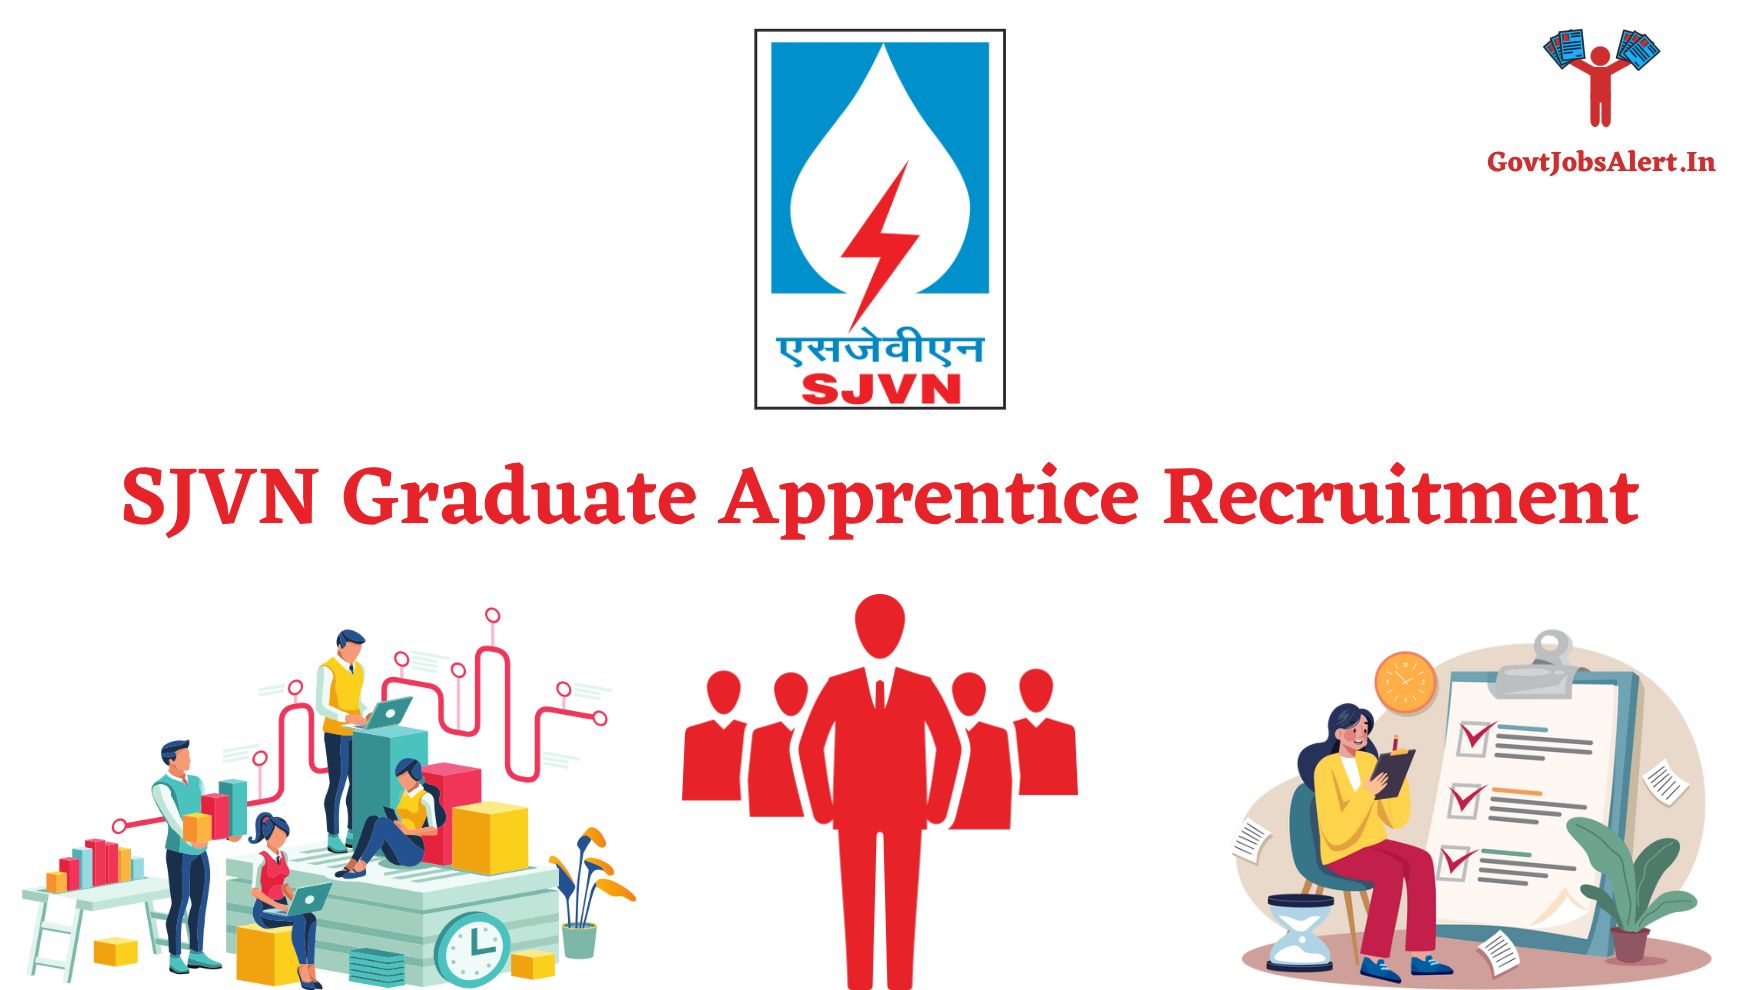 SJVN Graduate Apprentice Recruitment